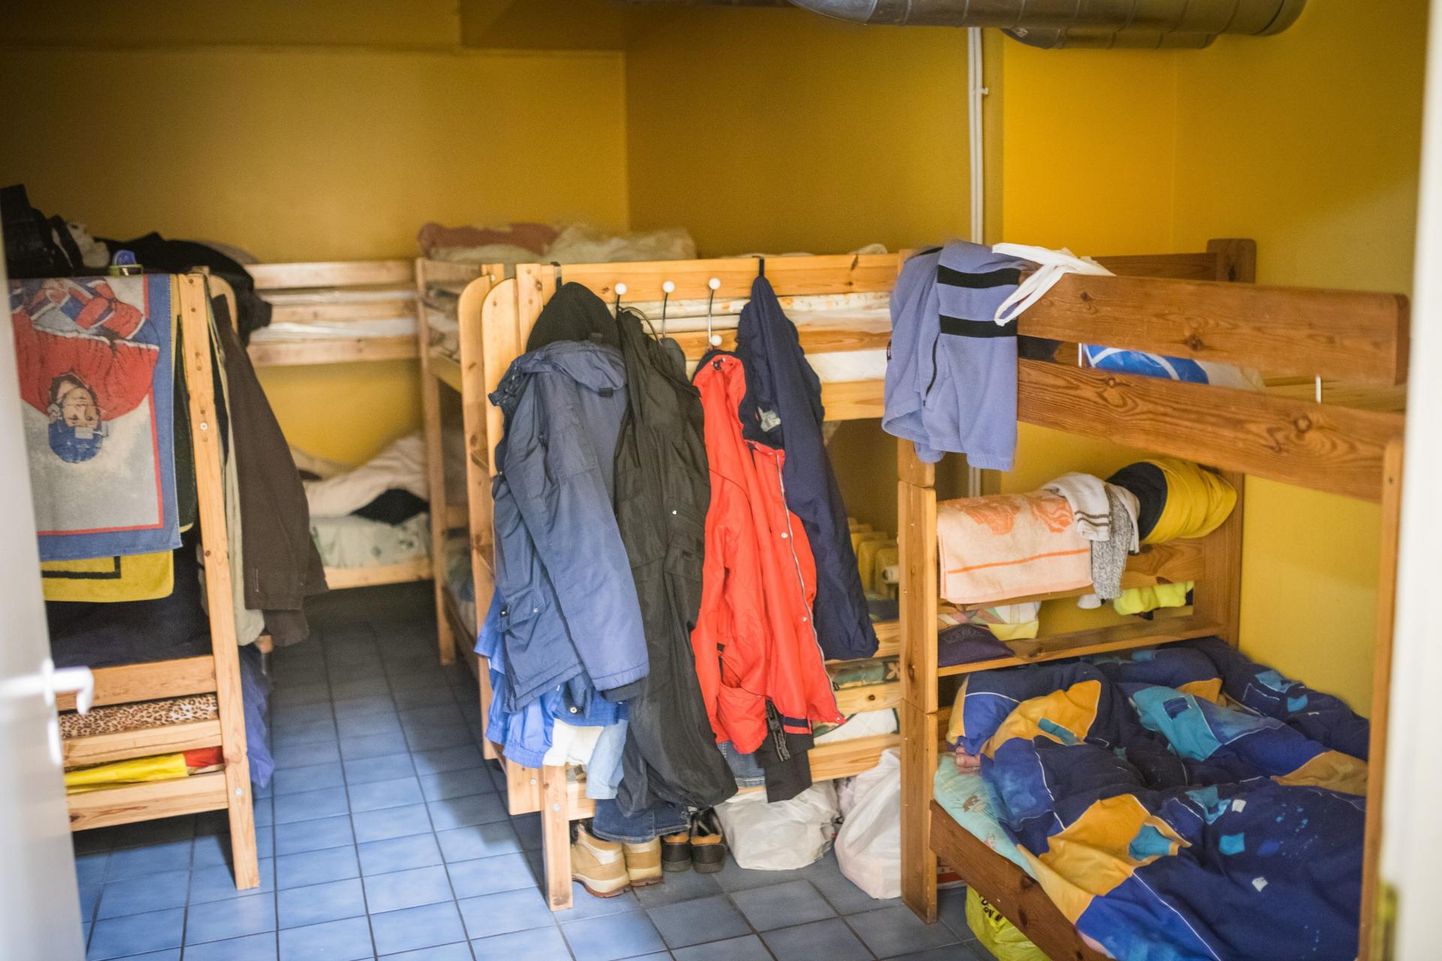 Aprilli algusest kinni olnud Rakvere sotsiaalkeskuse varjupaik alustas tööd ja karantiinis olnud mehed naasid Kohtla-Järve hooldekodust. 